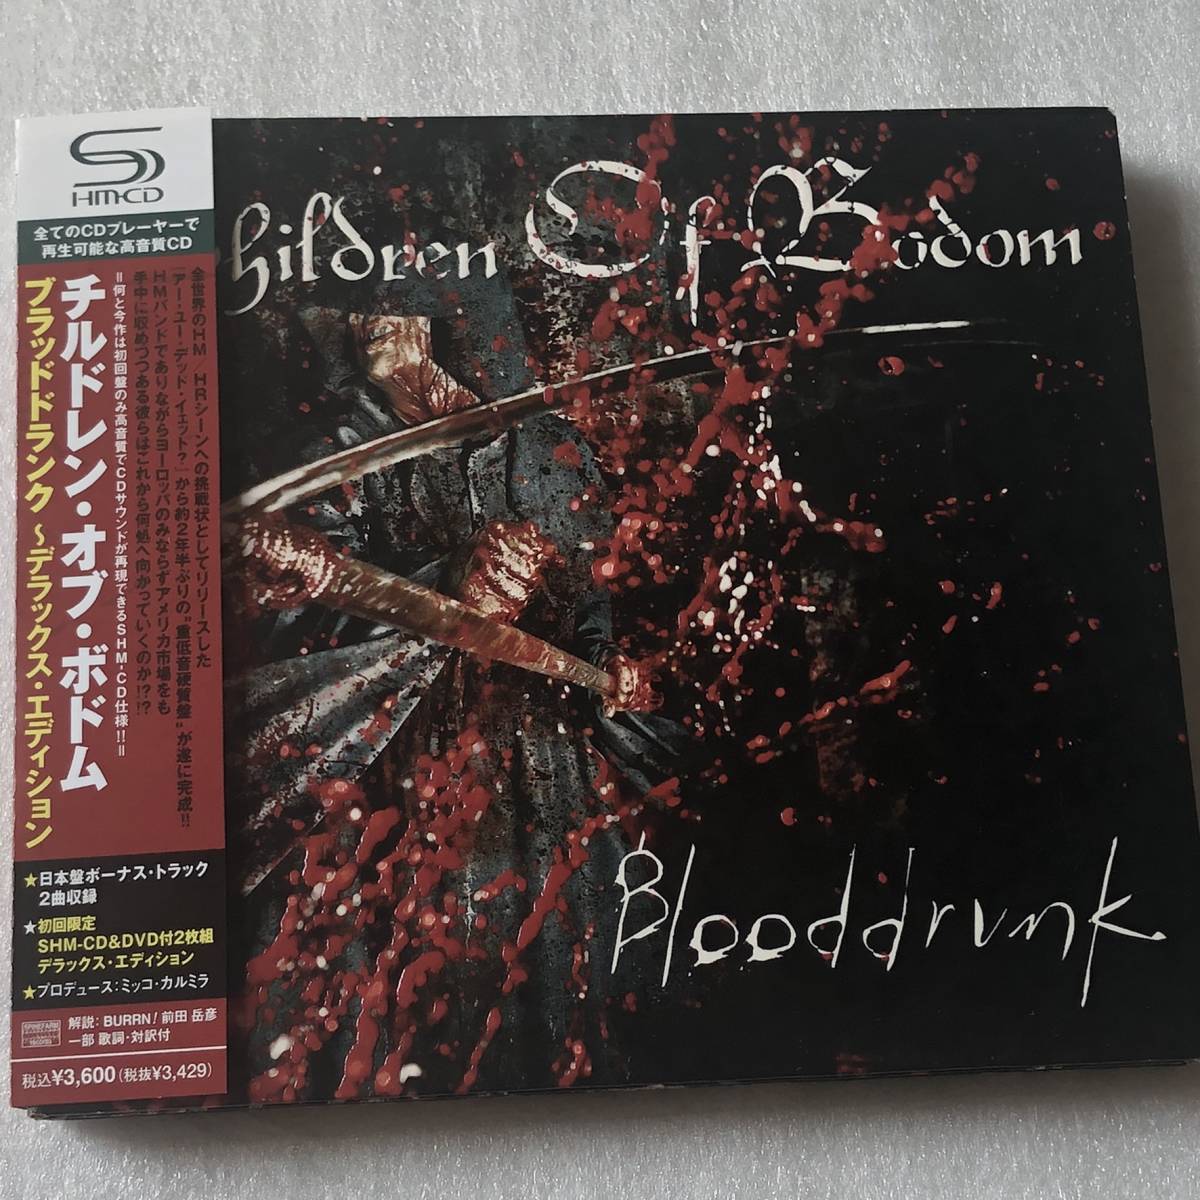 中古CD Children of Bodom チルドレン・オブ・ボドム/Blooddrunk(CD+DVD) (2008年) フィンランド産HR/HM,メロデス系_画像1